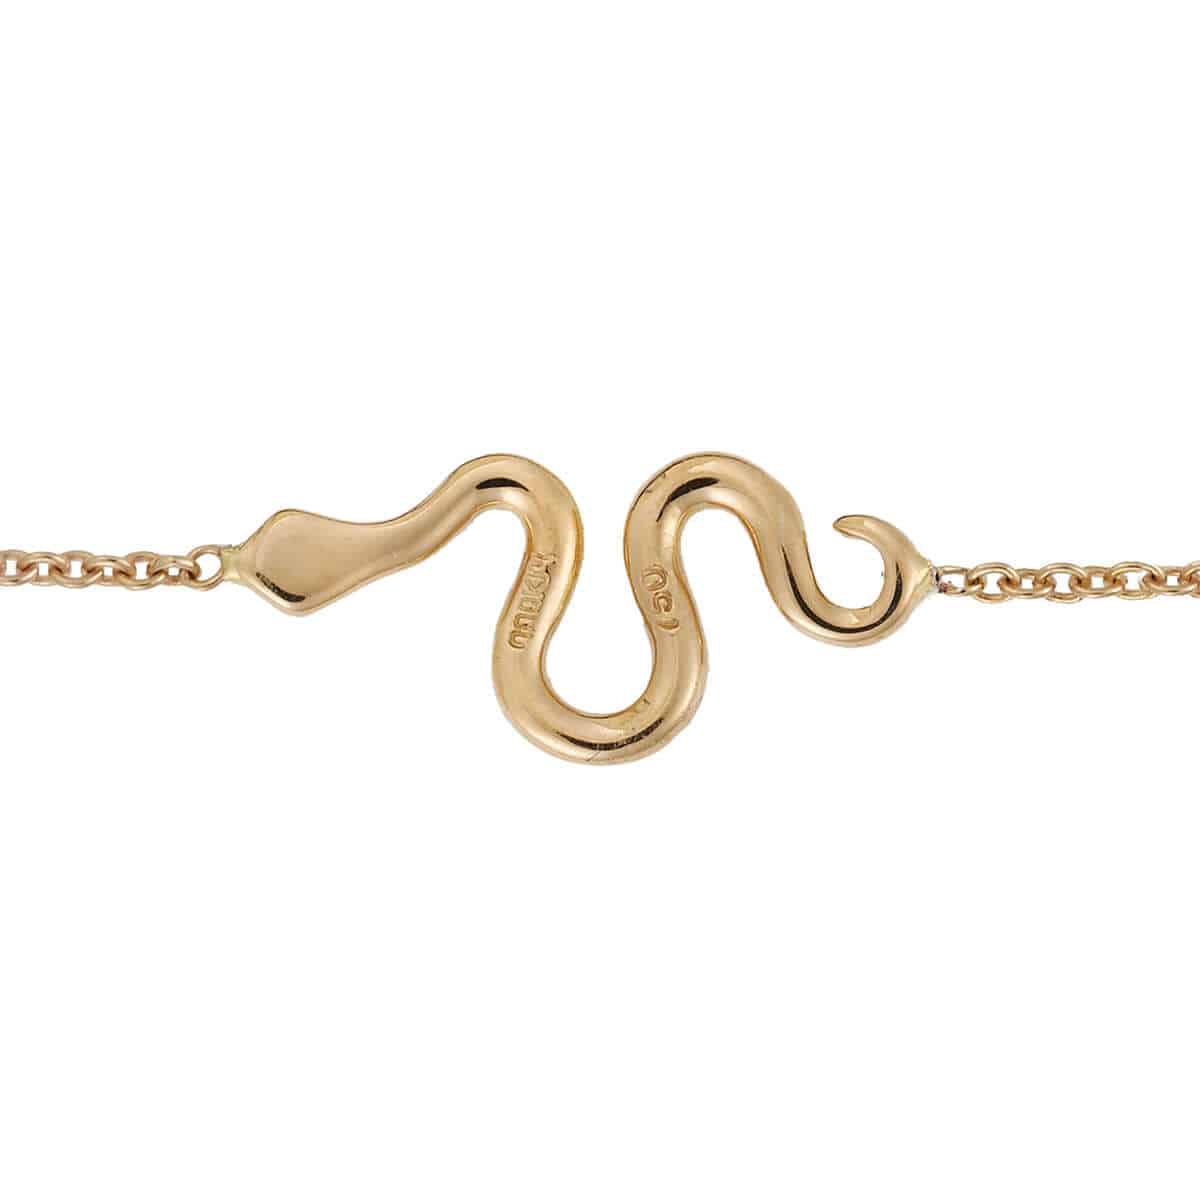 Little Snake Bracelet P-Chd-Ts - SNAKES - Ileana Makri store